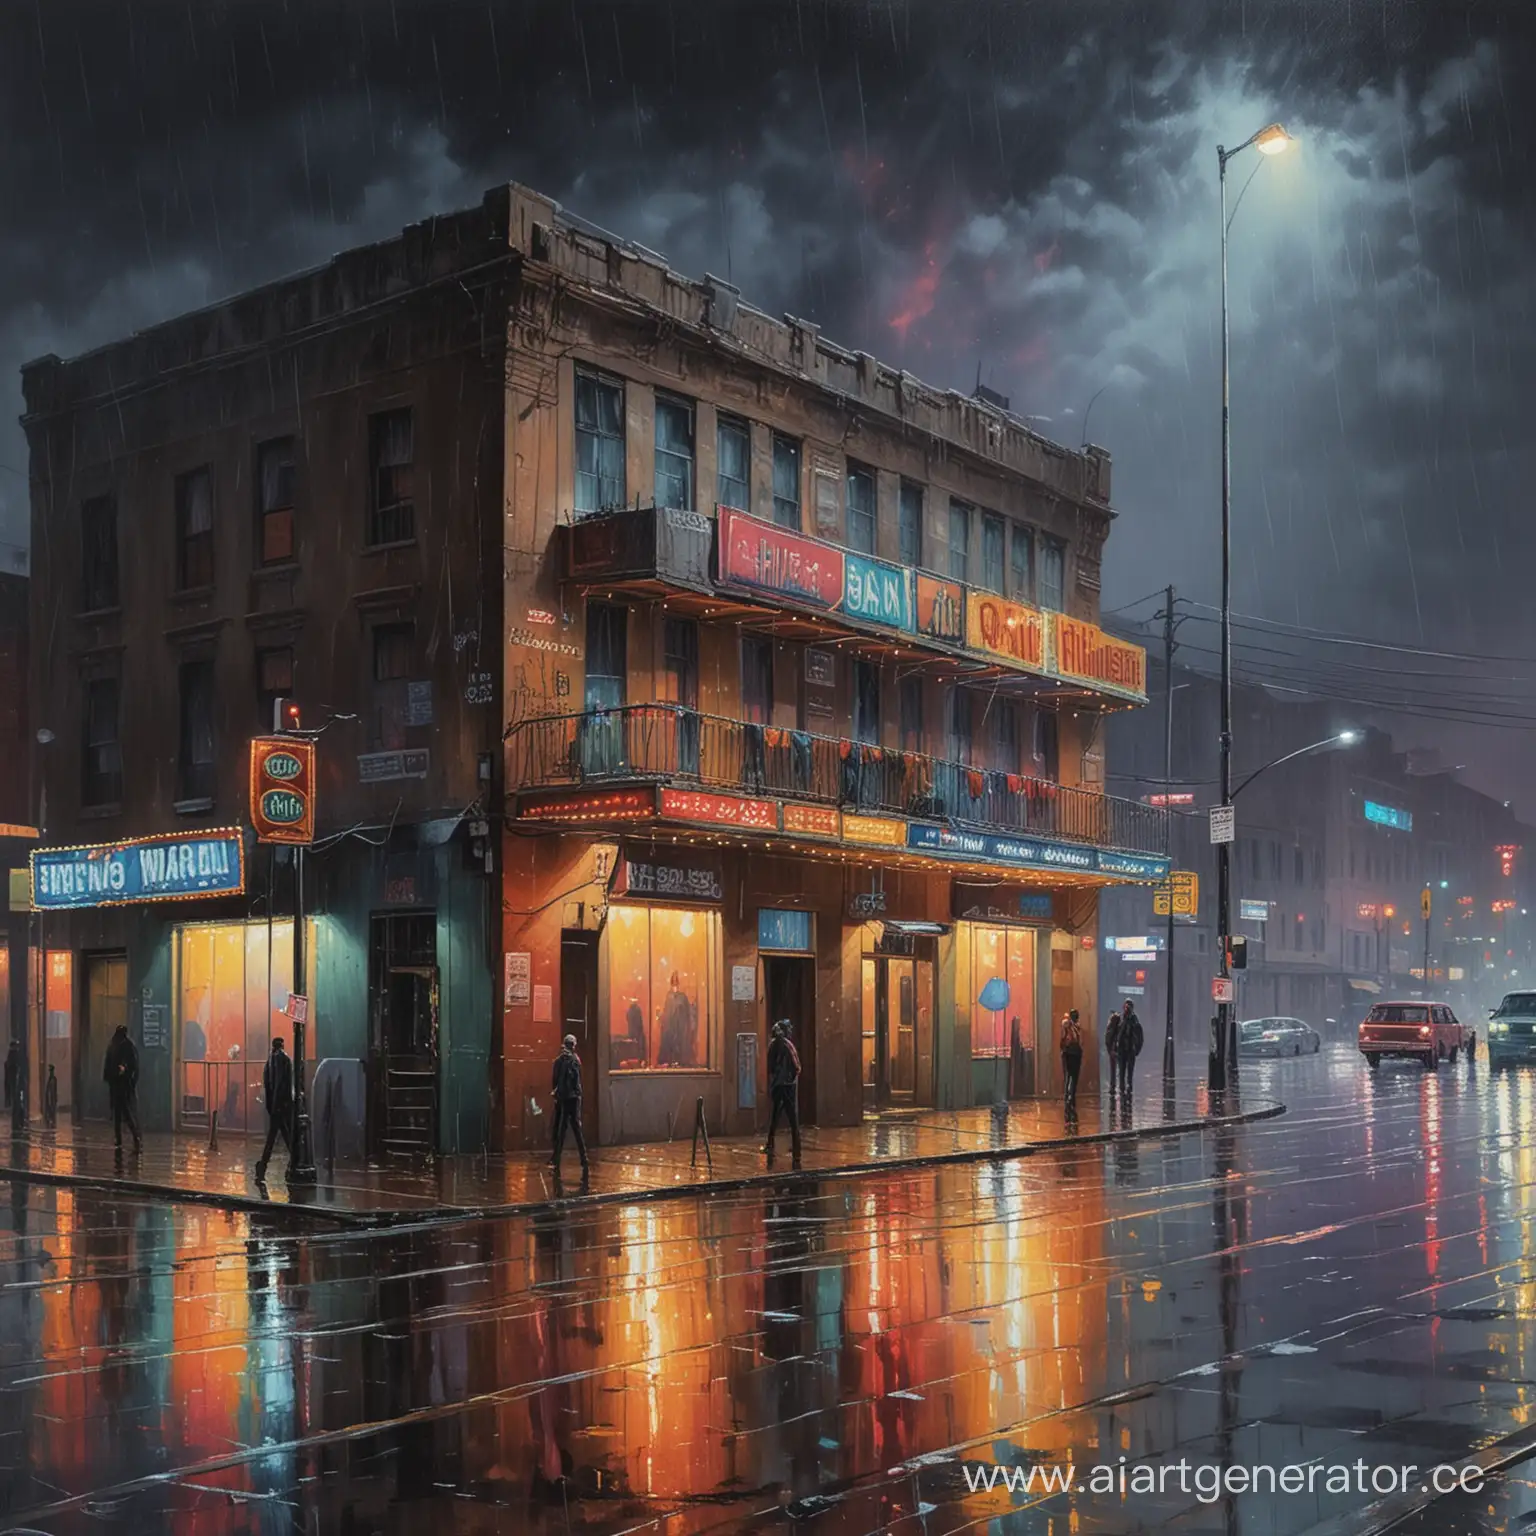 Улица, ночь, идёт дождь, шоссе, в правом углу картины стоит здание напоминающее клуб. Внутри здания горят разноцветные огни, происходит вечеринка, но на улице всё так же грустно
